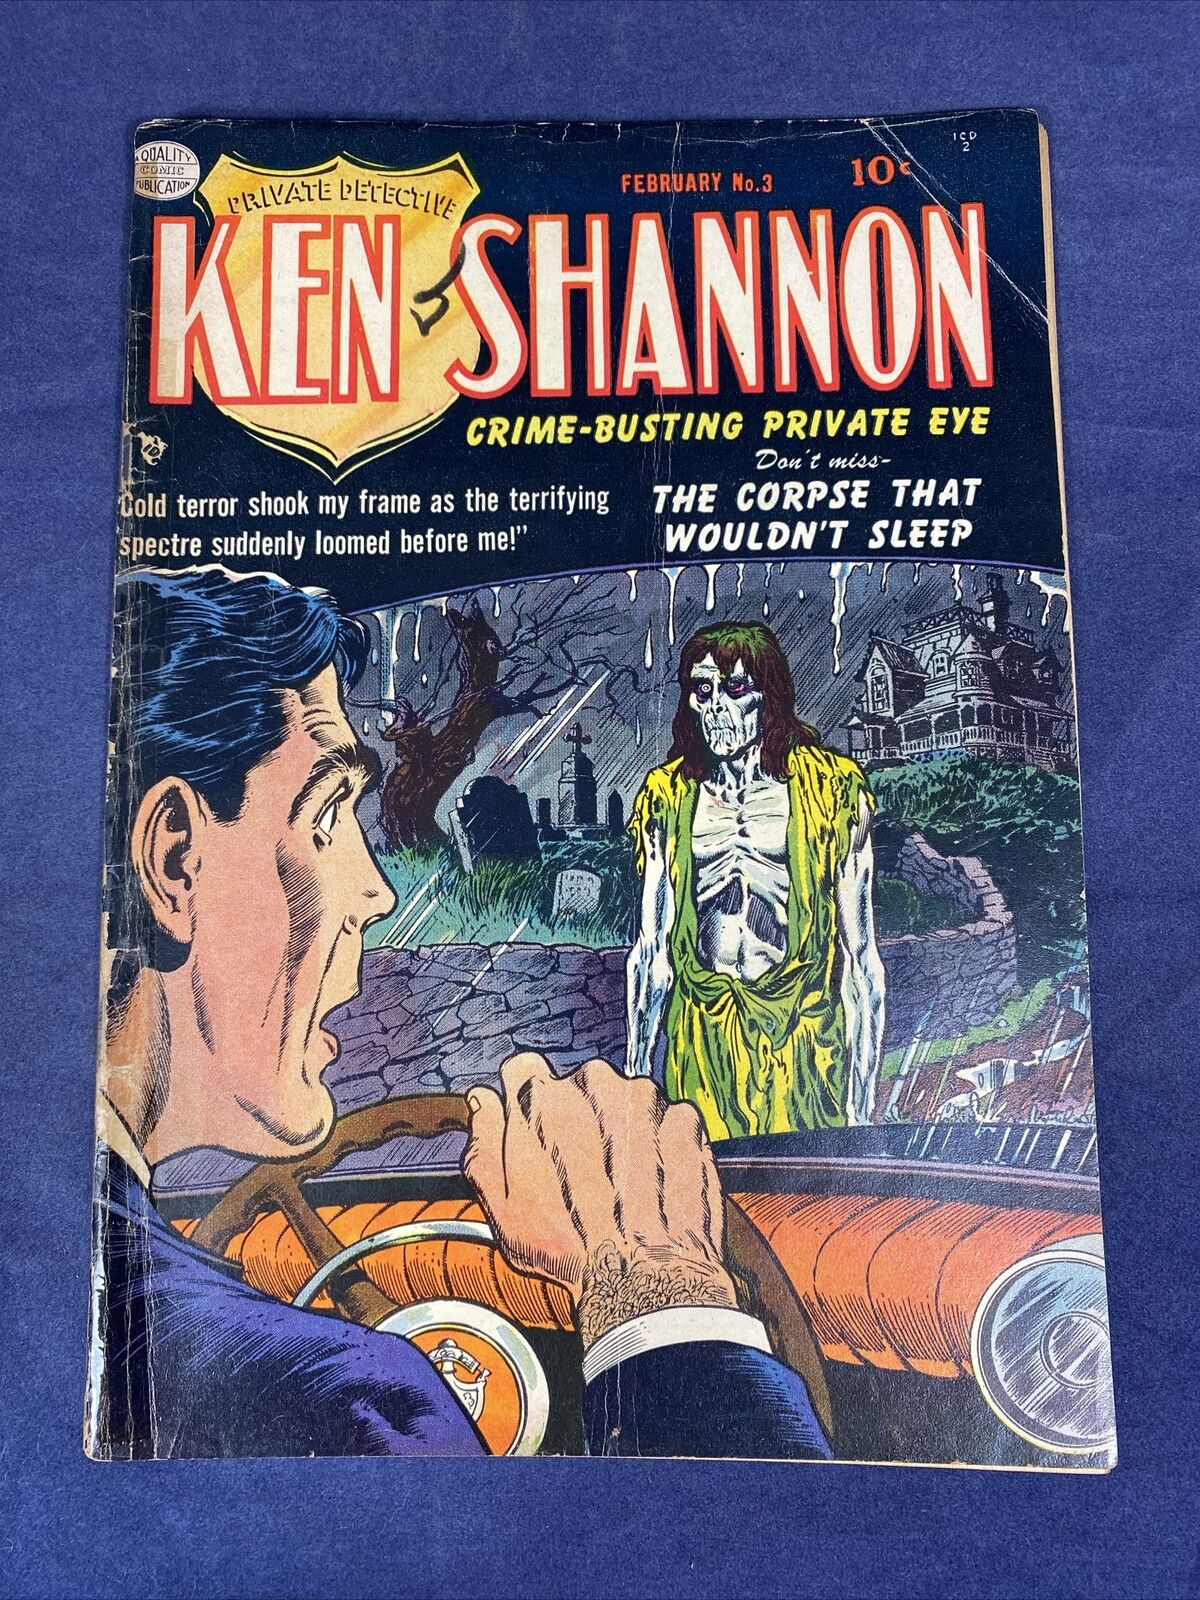 Ken Shannon #3 (Pre-Code Horror) Crandall & Jack Cole Art 1952 Golden Age Zombie